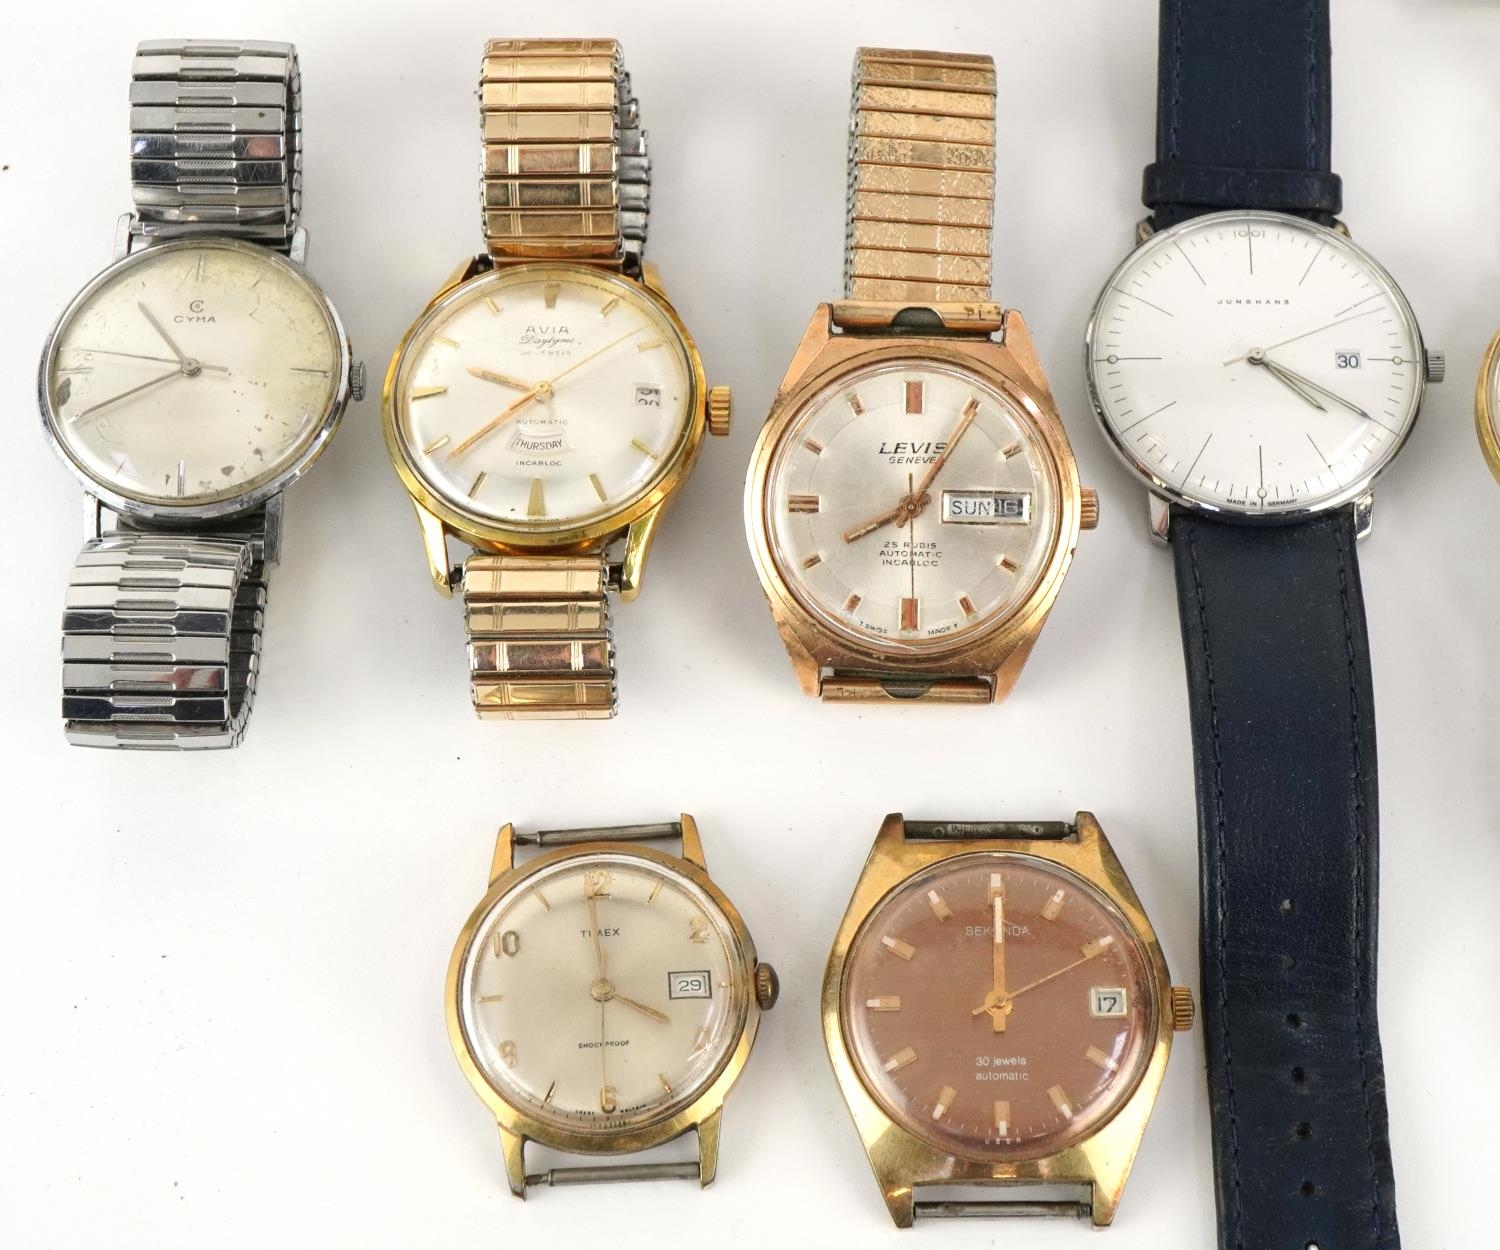 Fourteen vintage gentlemen's wristwatches including Junghans, Levis, Sekonda, Cyma, Avia, Bentima, - Image 3 of 4